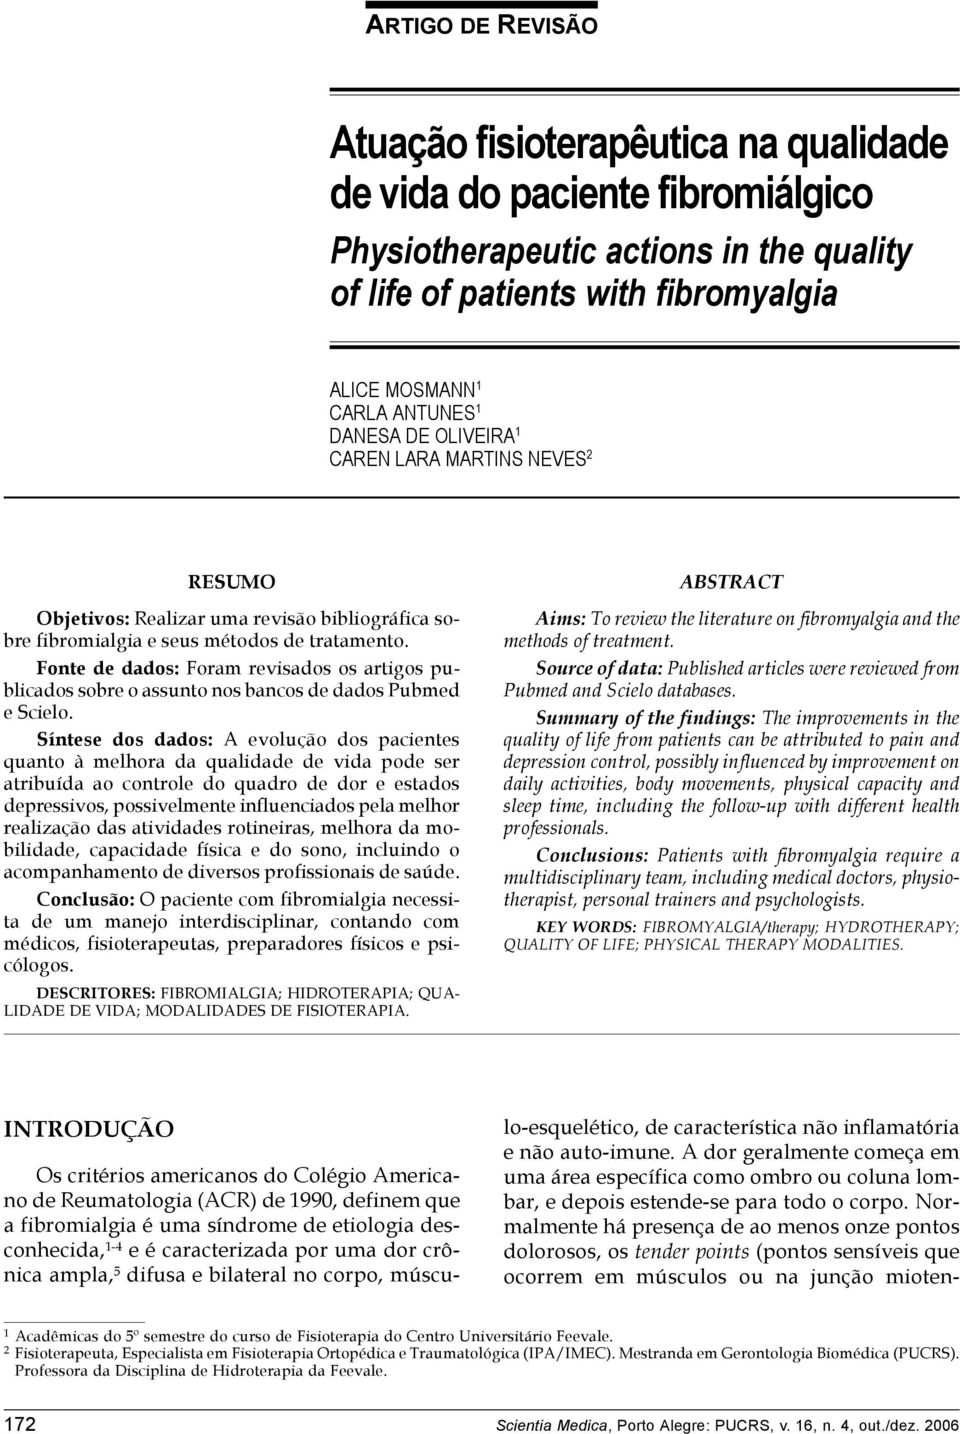 OLIVEIRA 1 CAREN LARA MARTINS NEVES 2 RESUMO Objetivos: Realizar uma revisão bibliográfica sobre fibromialgia e seus métodos de tratamento.